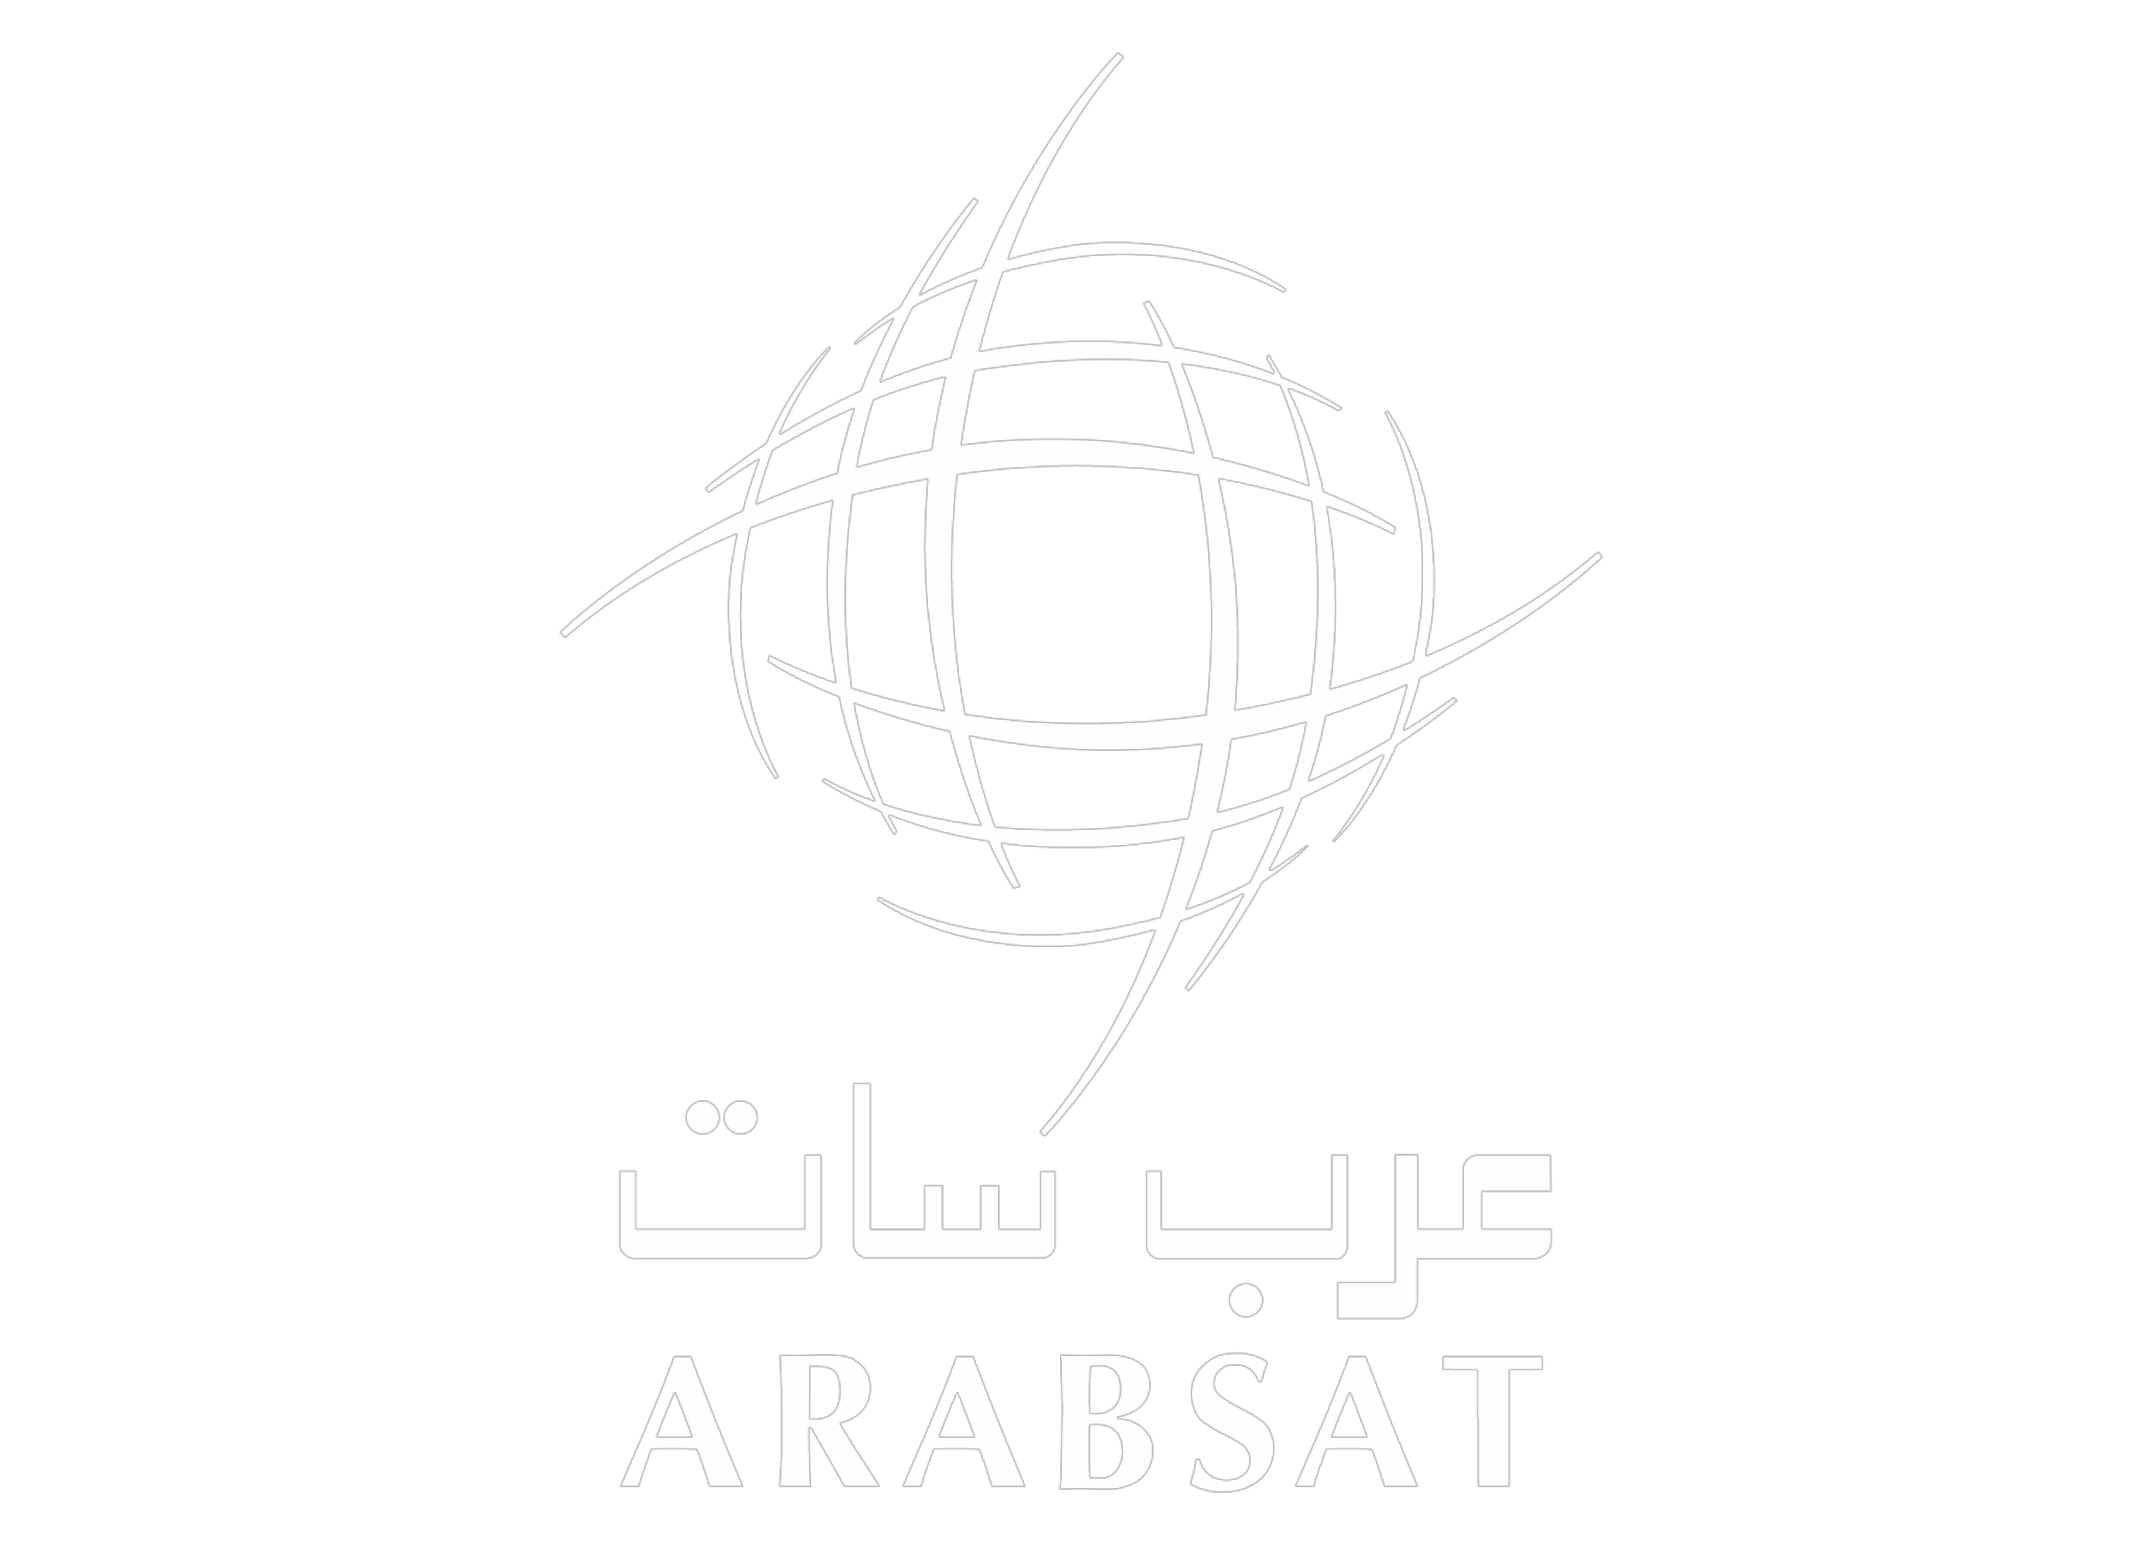 ARABSAT logo